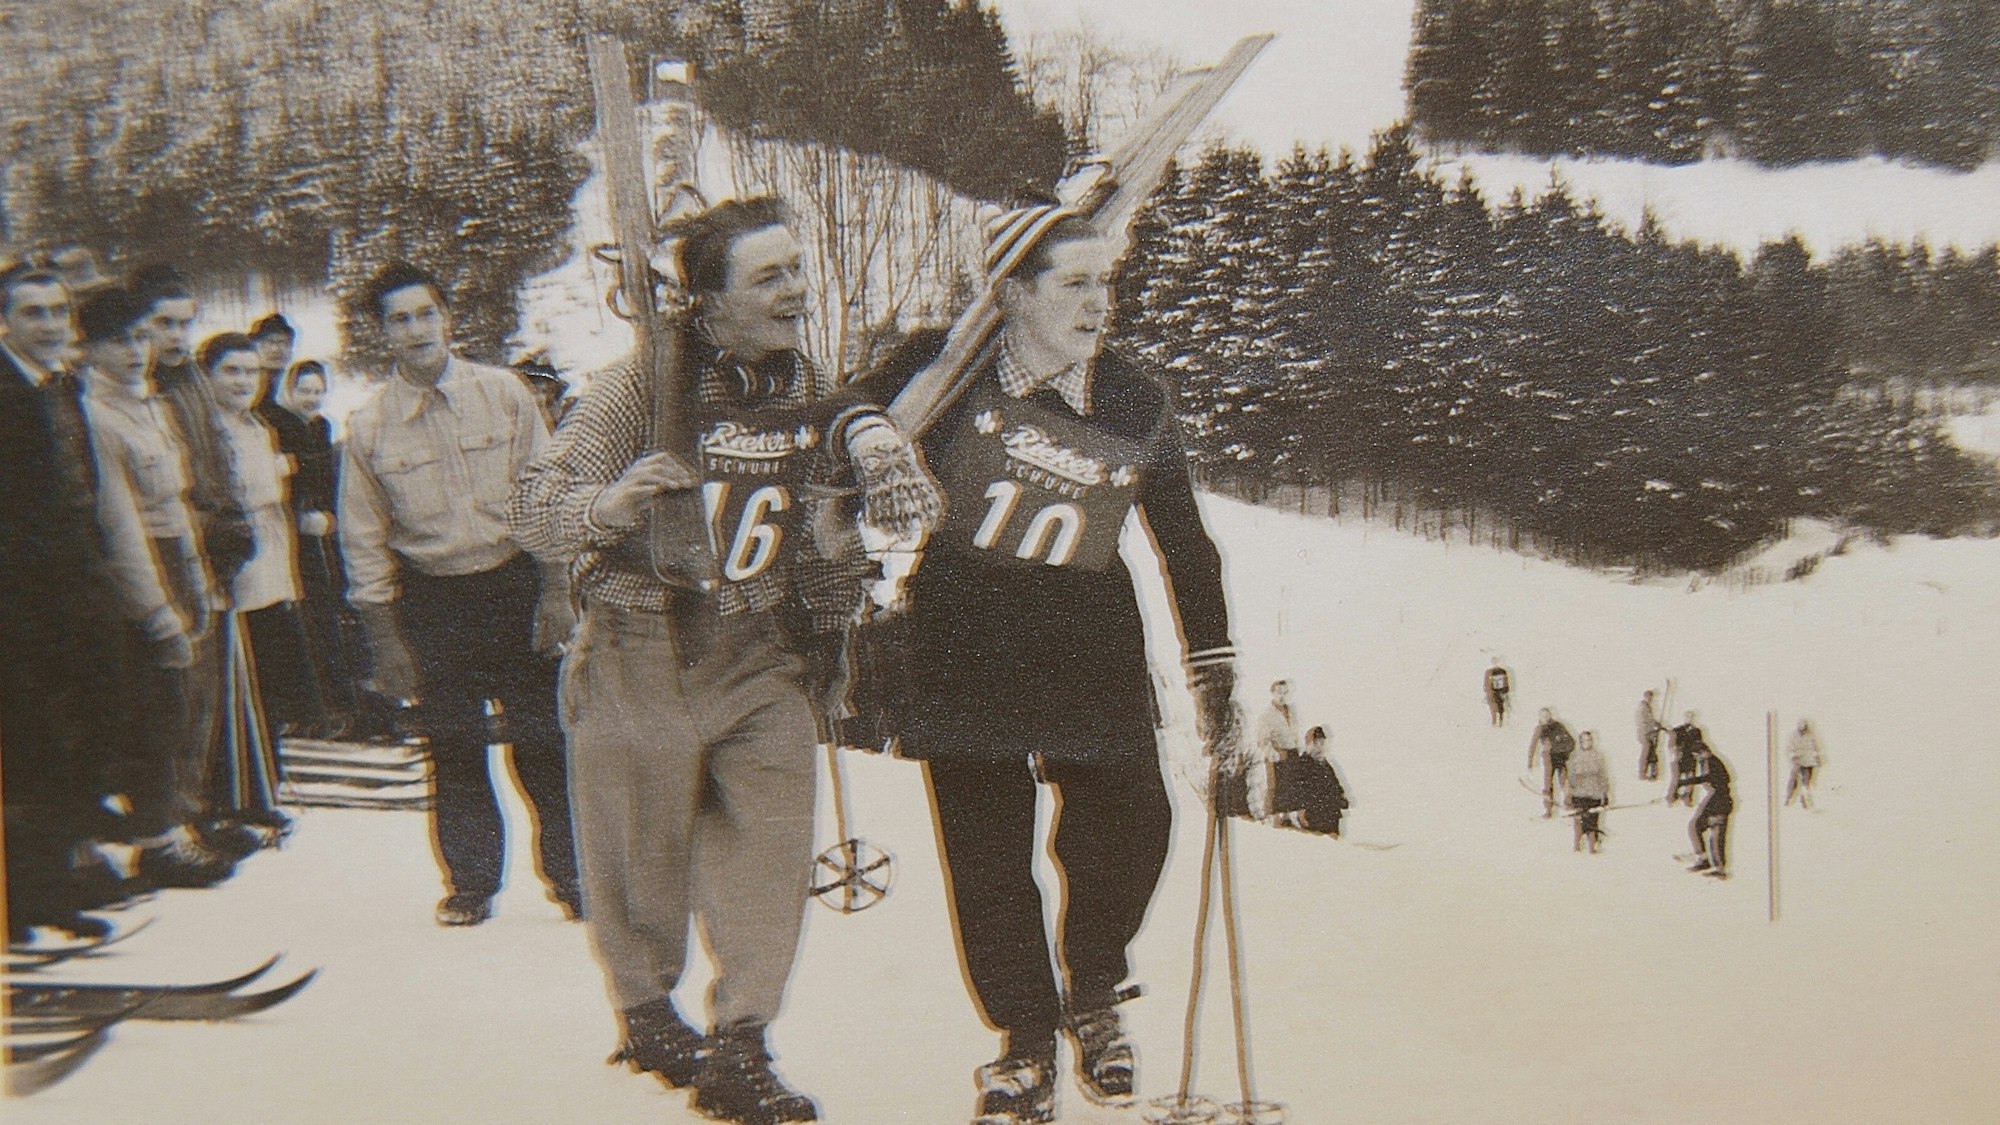 Männer tragen ihre Skier den Berg hinauf.